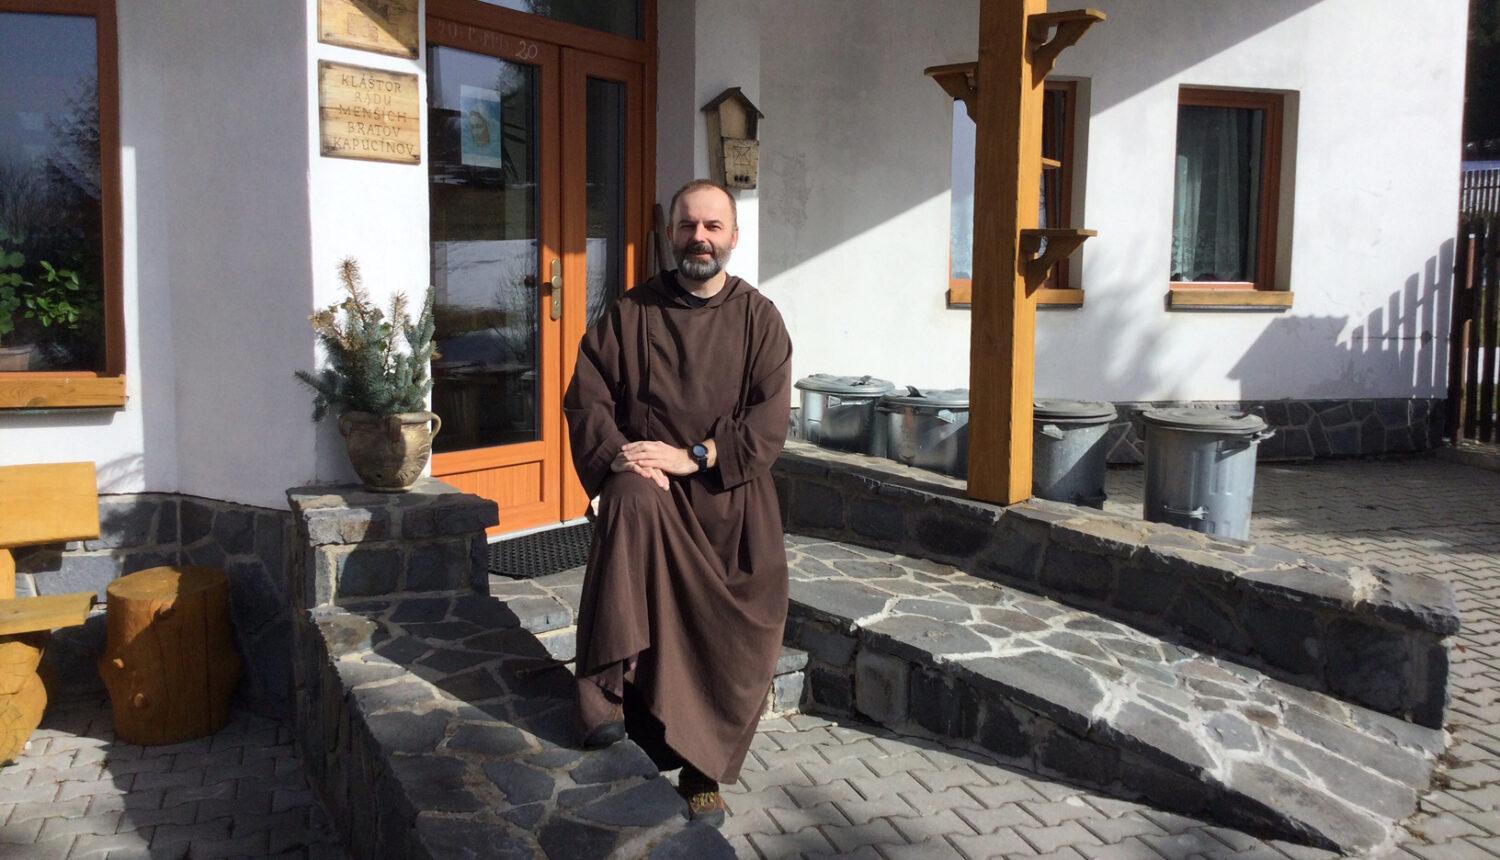 Kapucín Peter Vician: Kvôli dlhom chcel ukončiť svoj život, dnes je kňazom